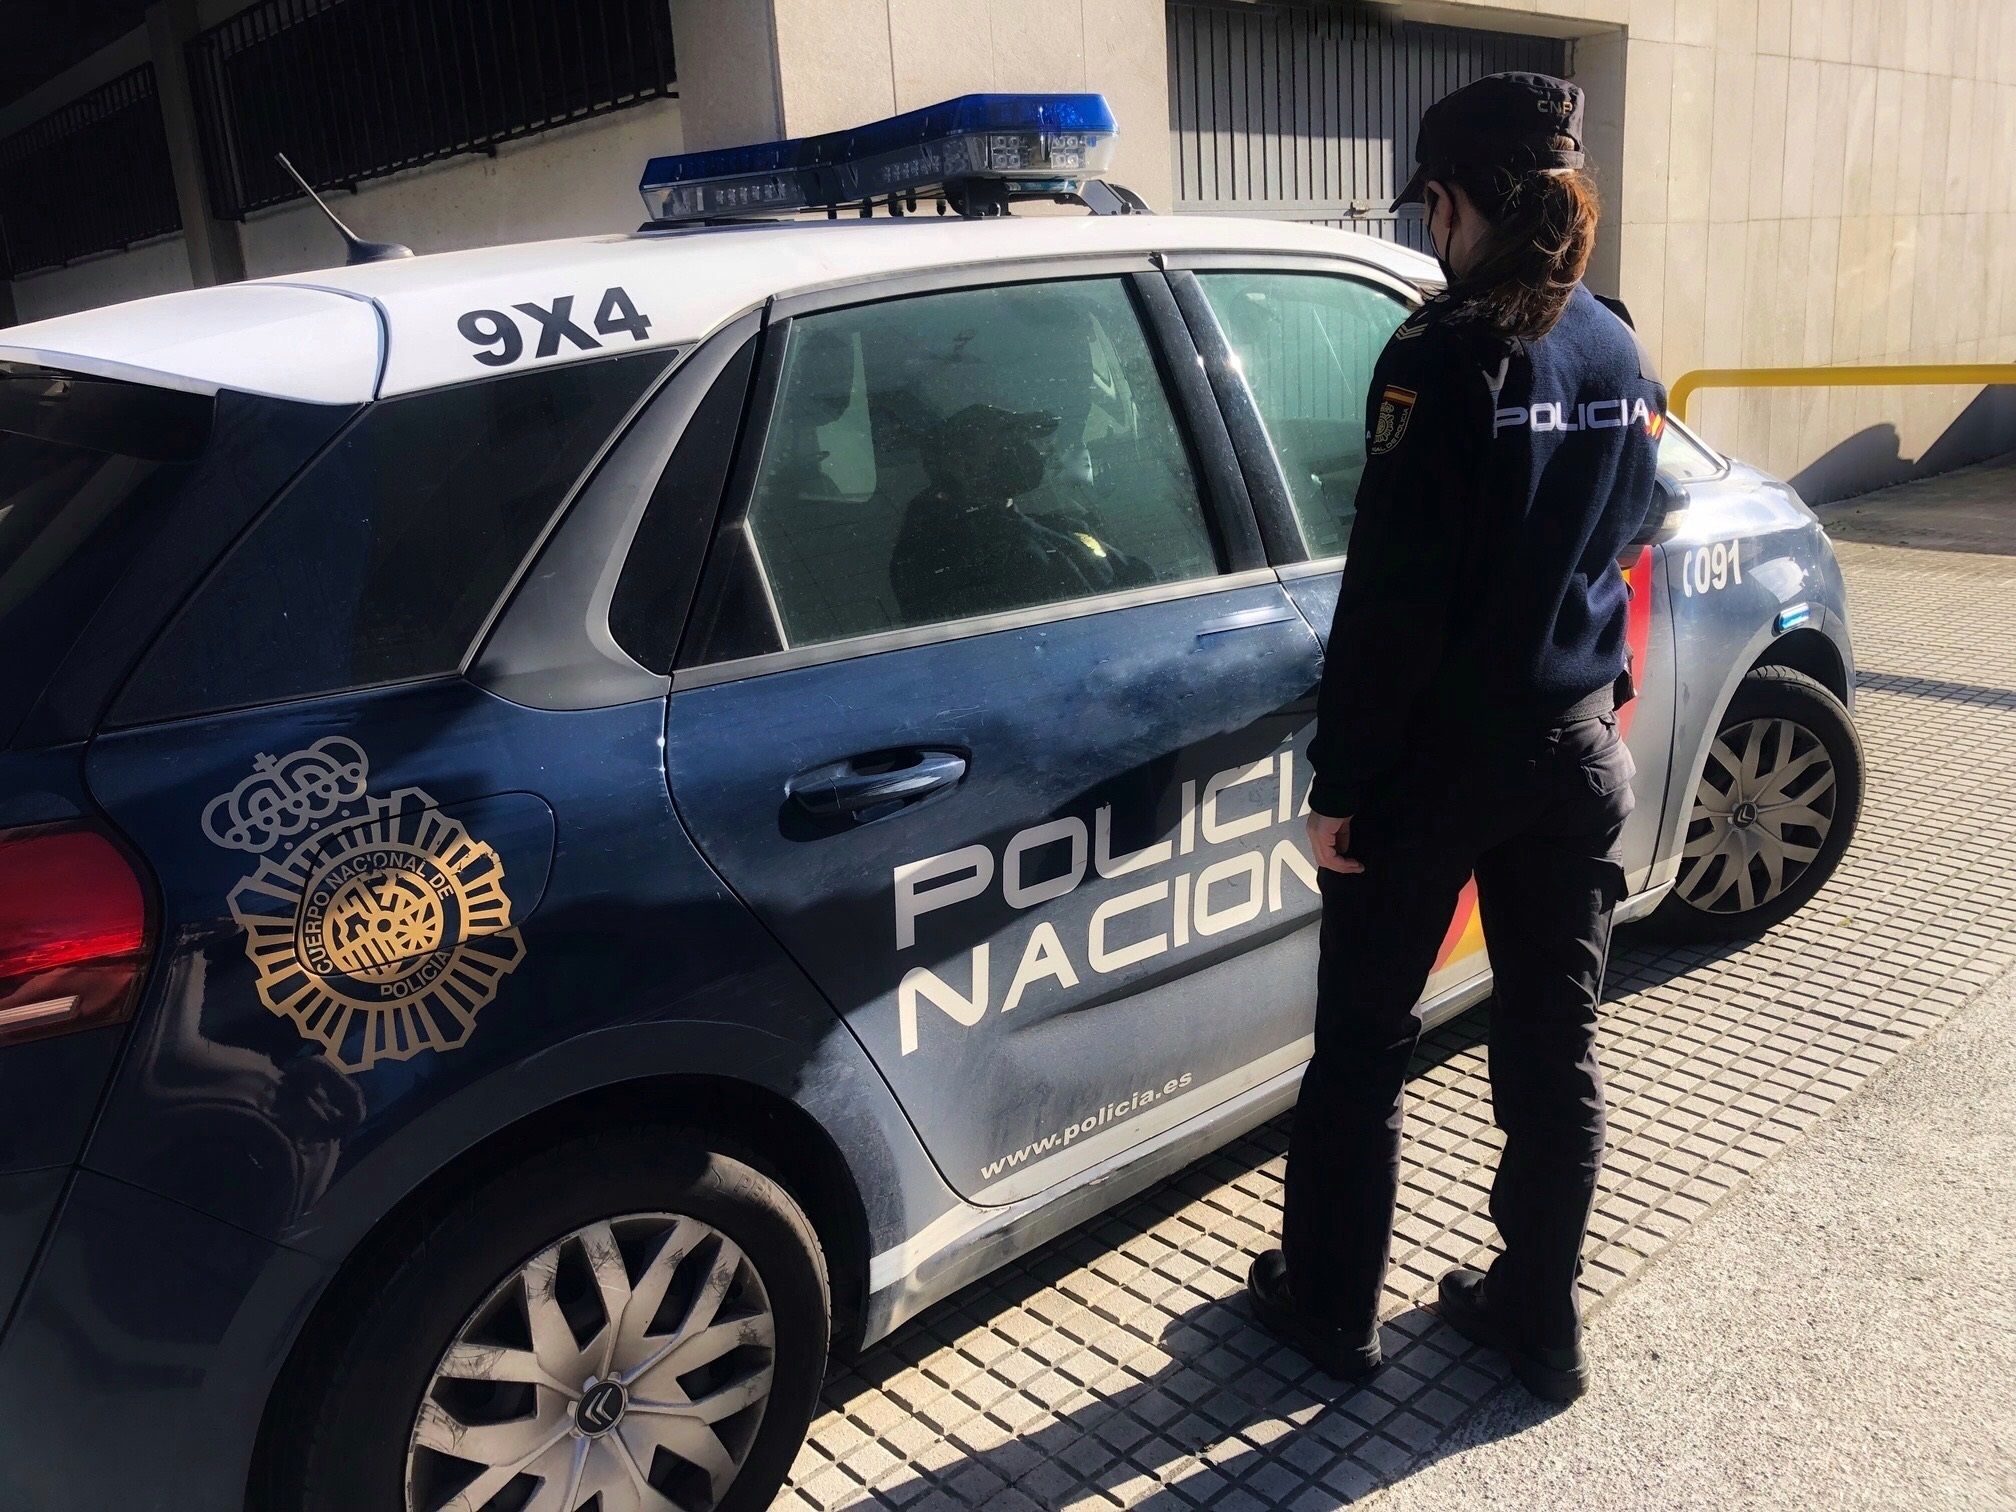 La Policía Nacional ha detenido en El puerto a un hombre que robó más de 5.000 euros en metálico y joyas en la vivienda en la que había trabajado.